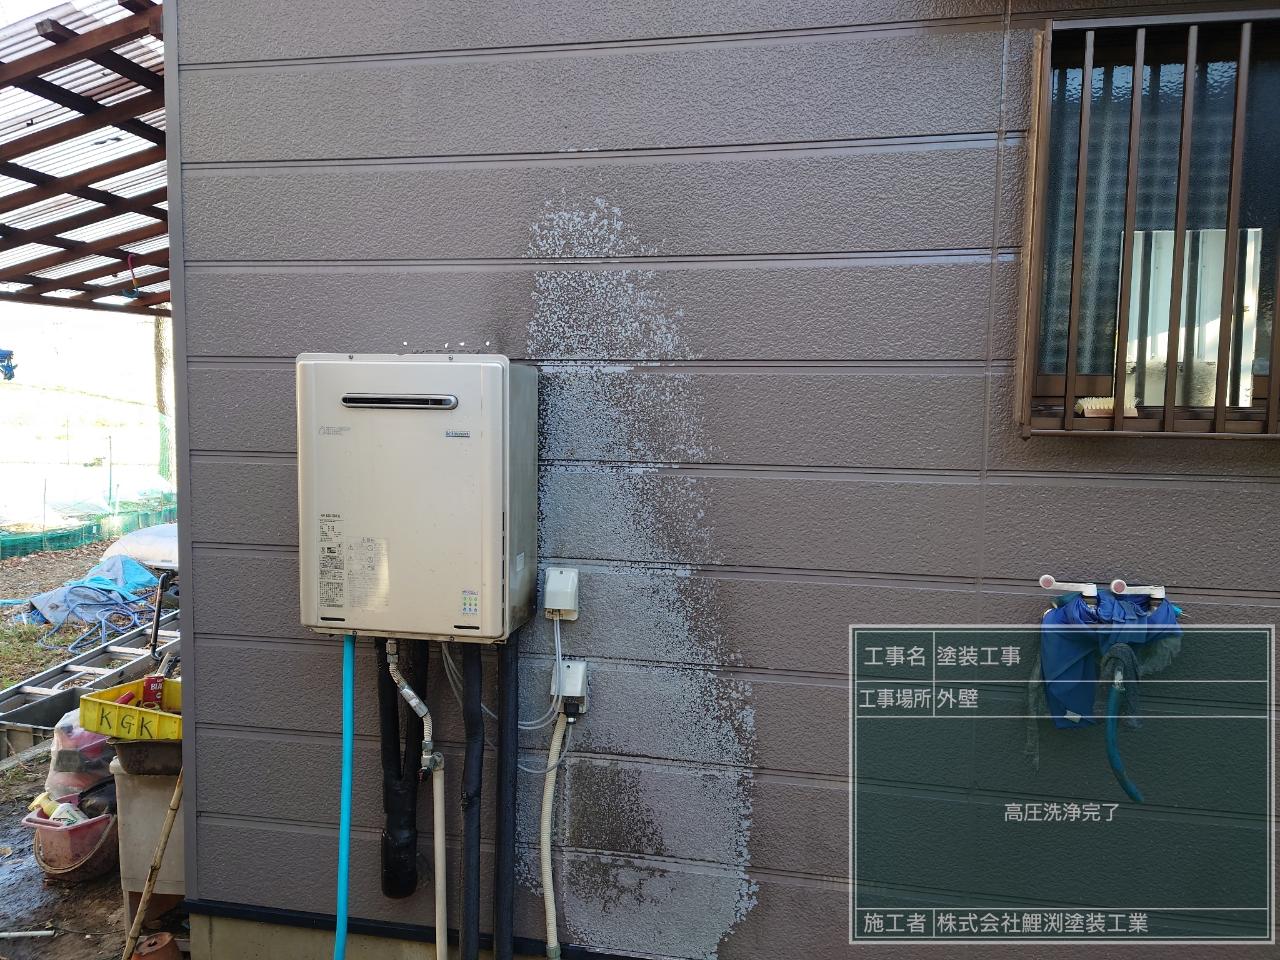 埼玉県比企郡川島町で外壁の高圧洗浄をしました。